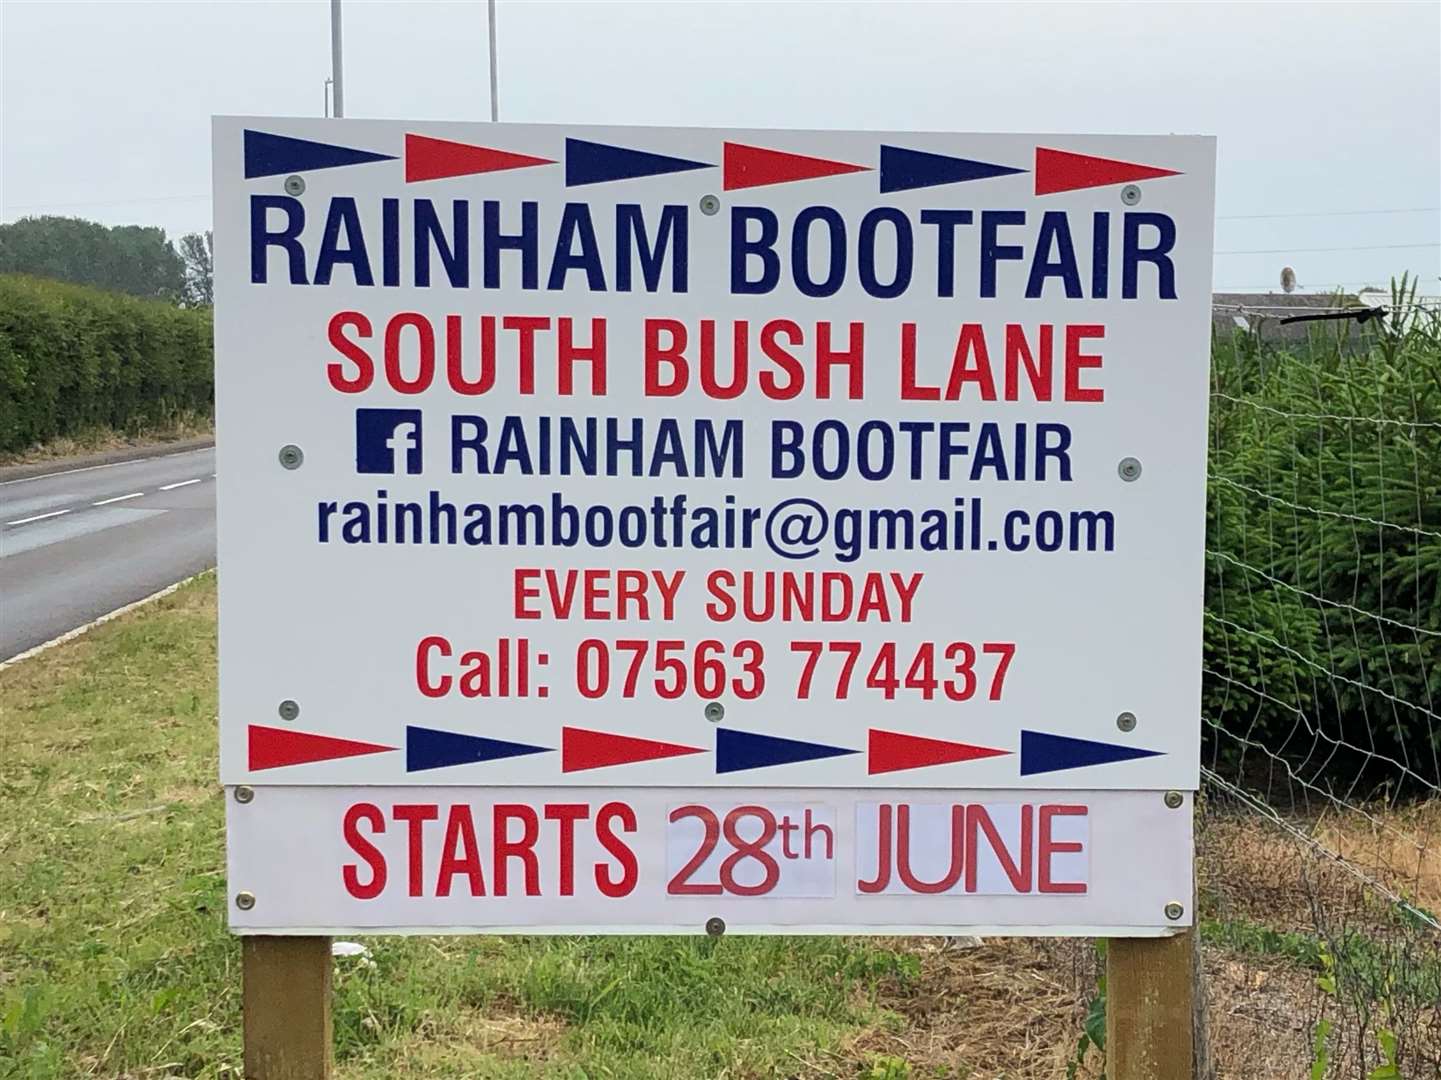 Rainham Bootfair launched in South Bush Lane last month